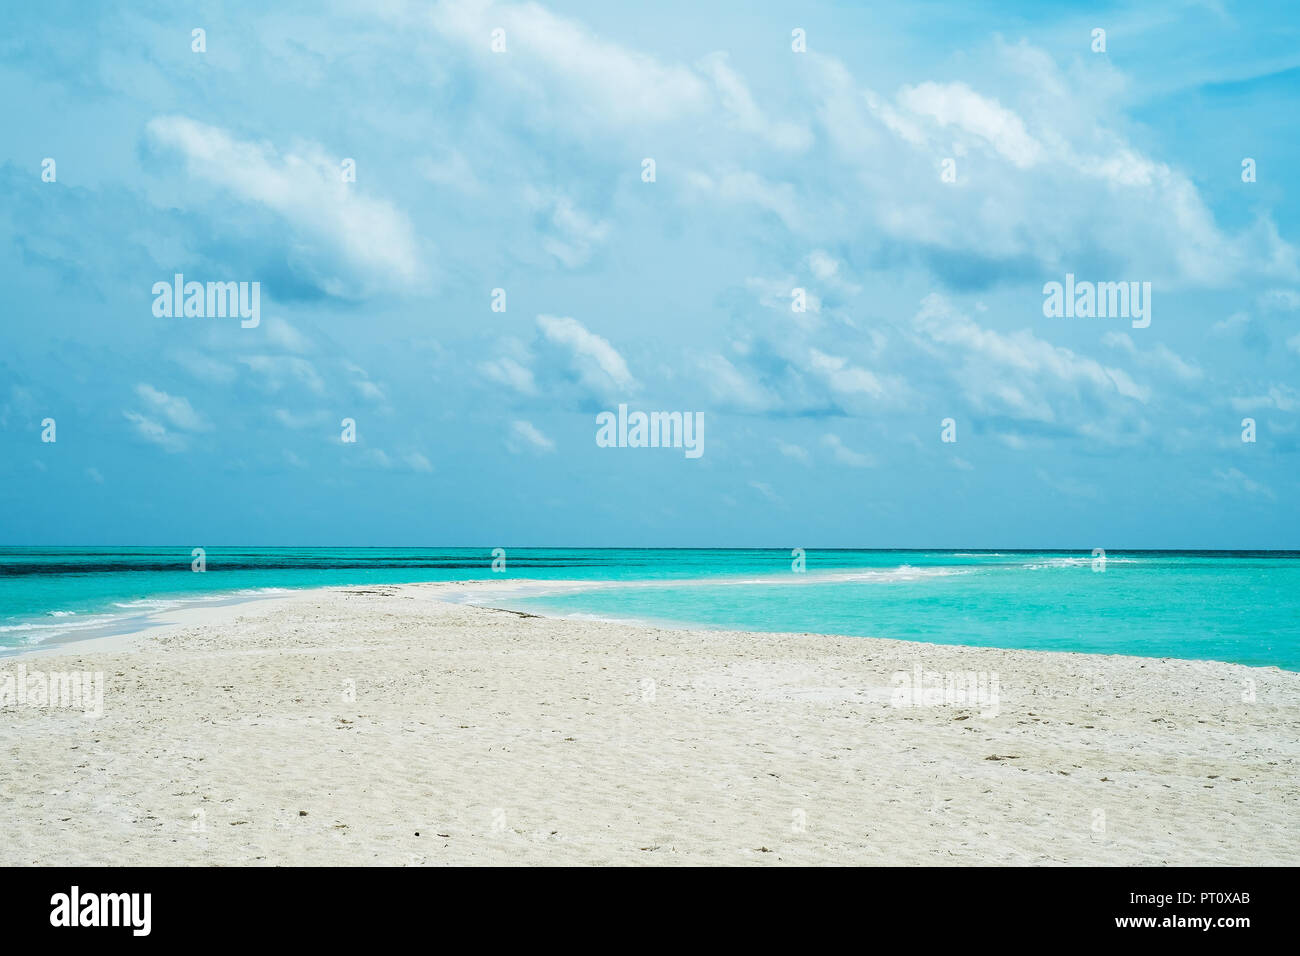 Arena de la costa en el océano índico (Maldivas - Lhaviyani Atoll) Foto de stock